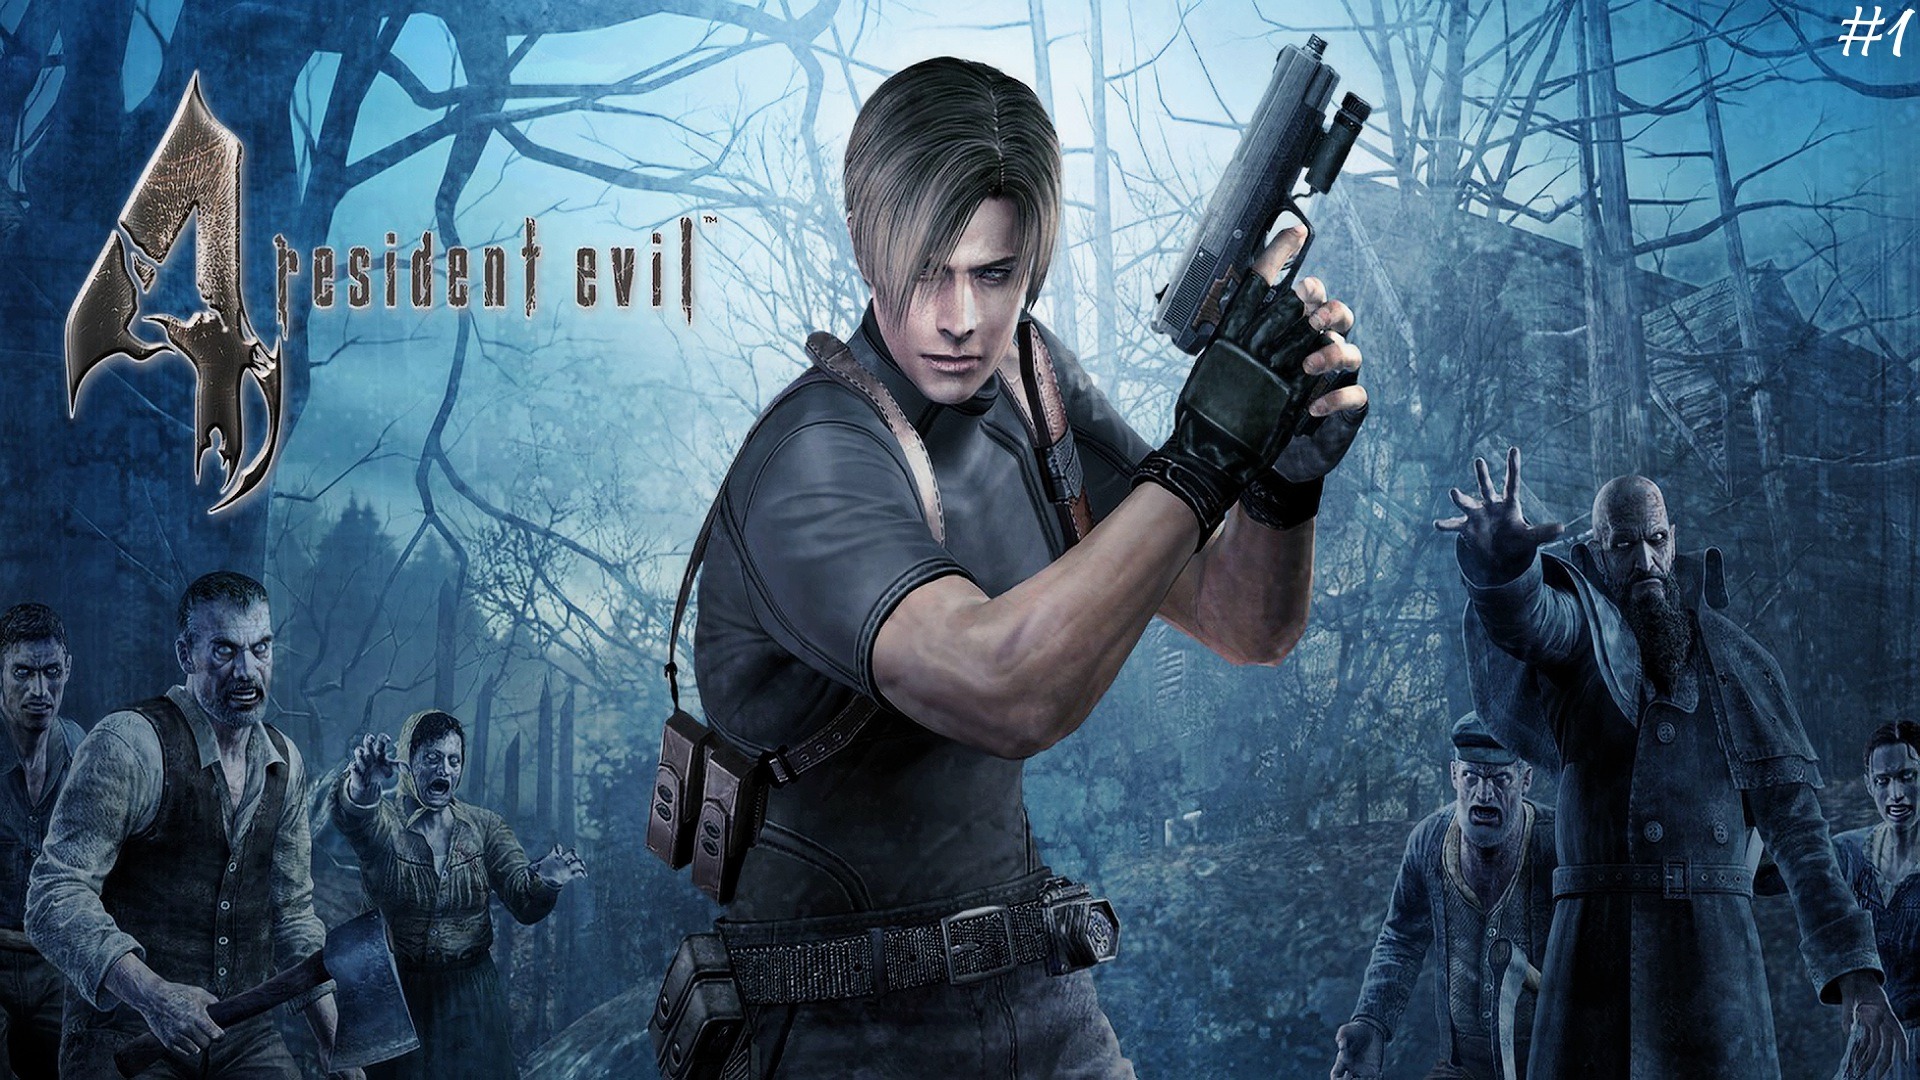 "ВСПОМИНАЯ КЛАССИКУ" Resident Evil 4 прохождение на Русском Часть #1 | Walkthrough | Стрим